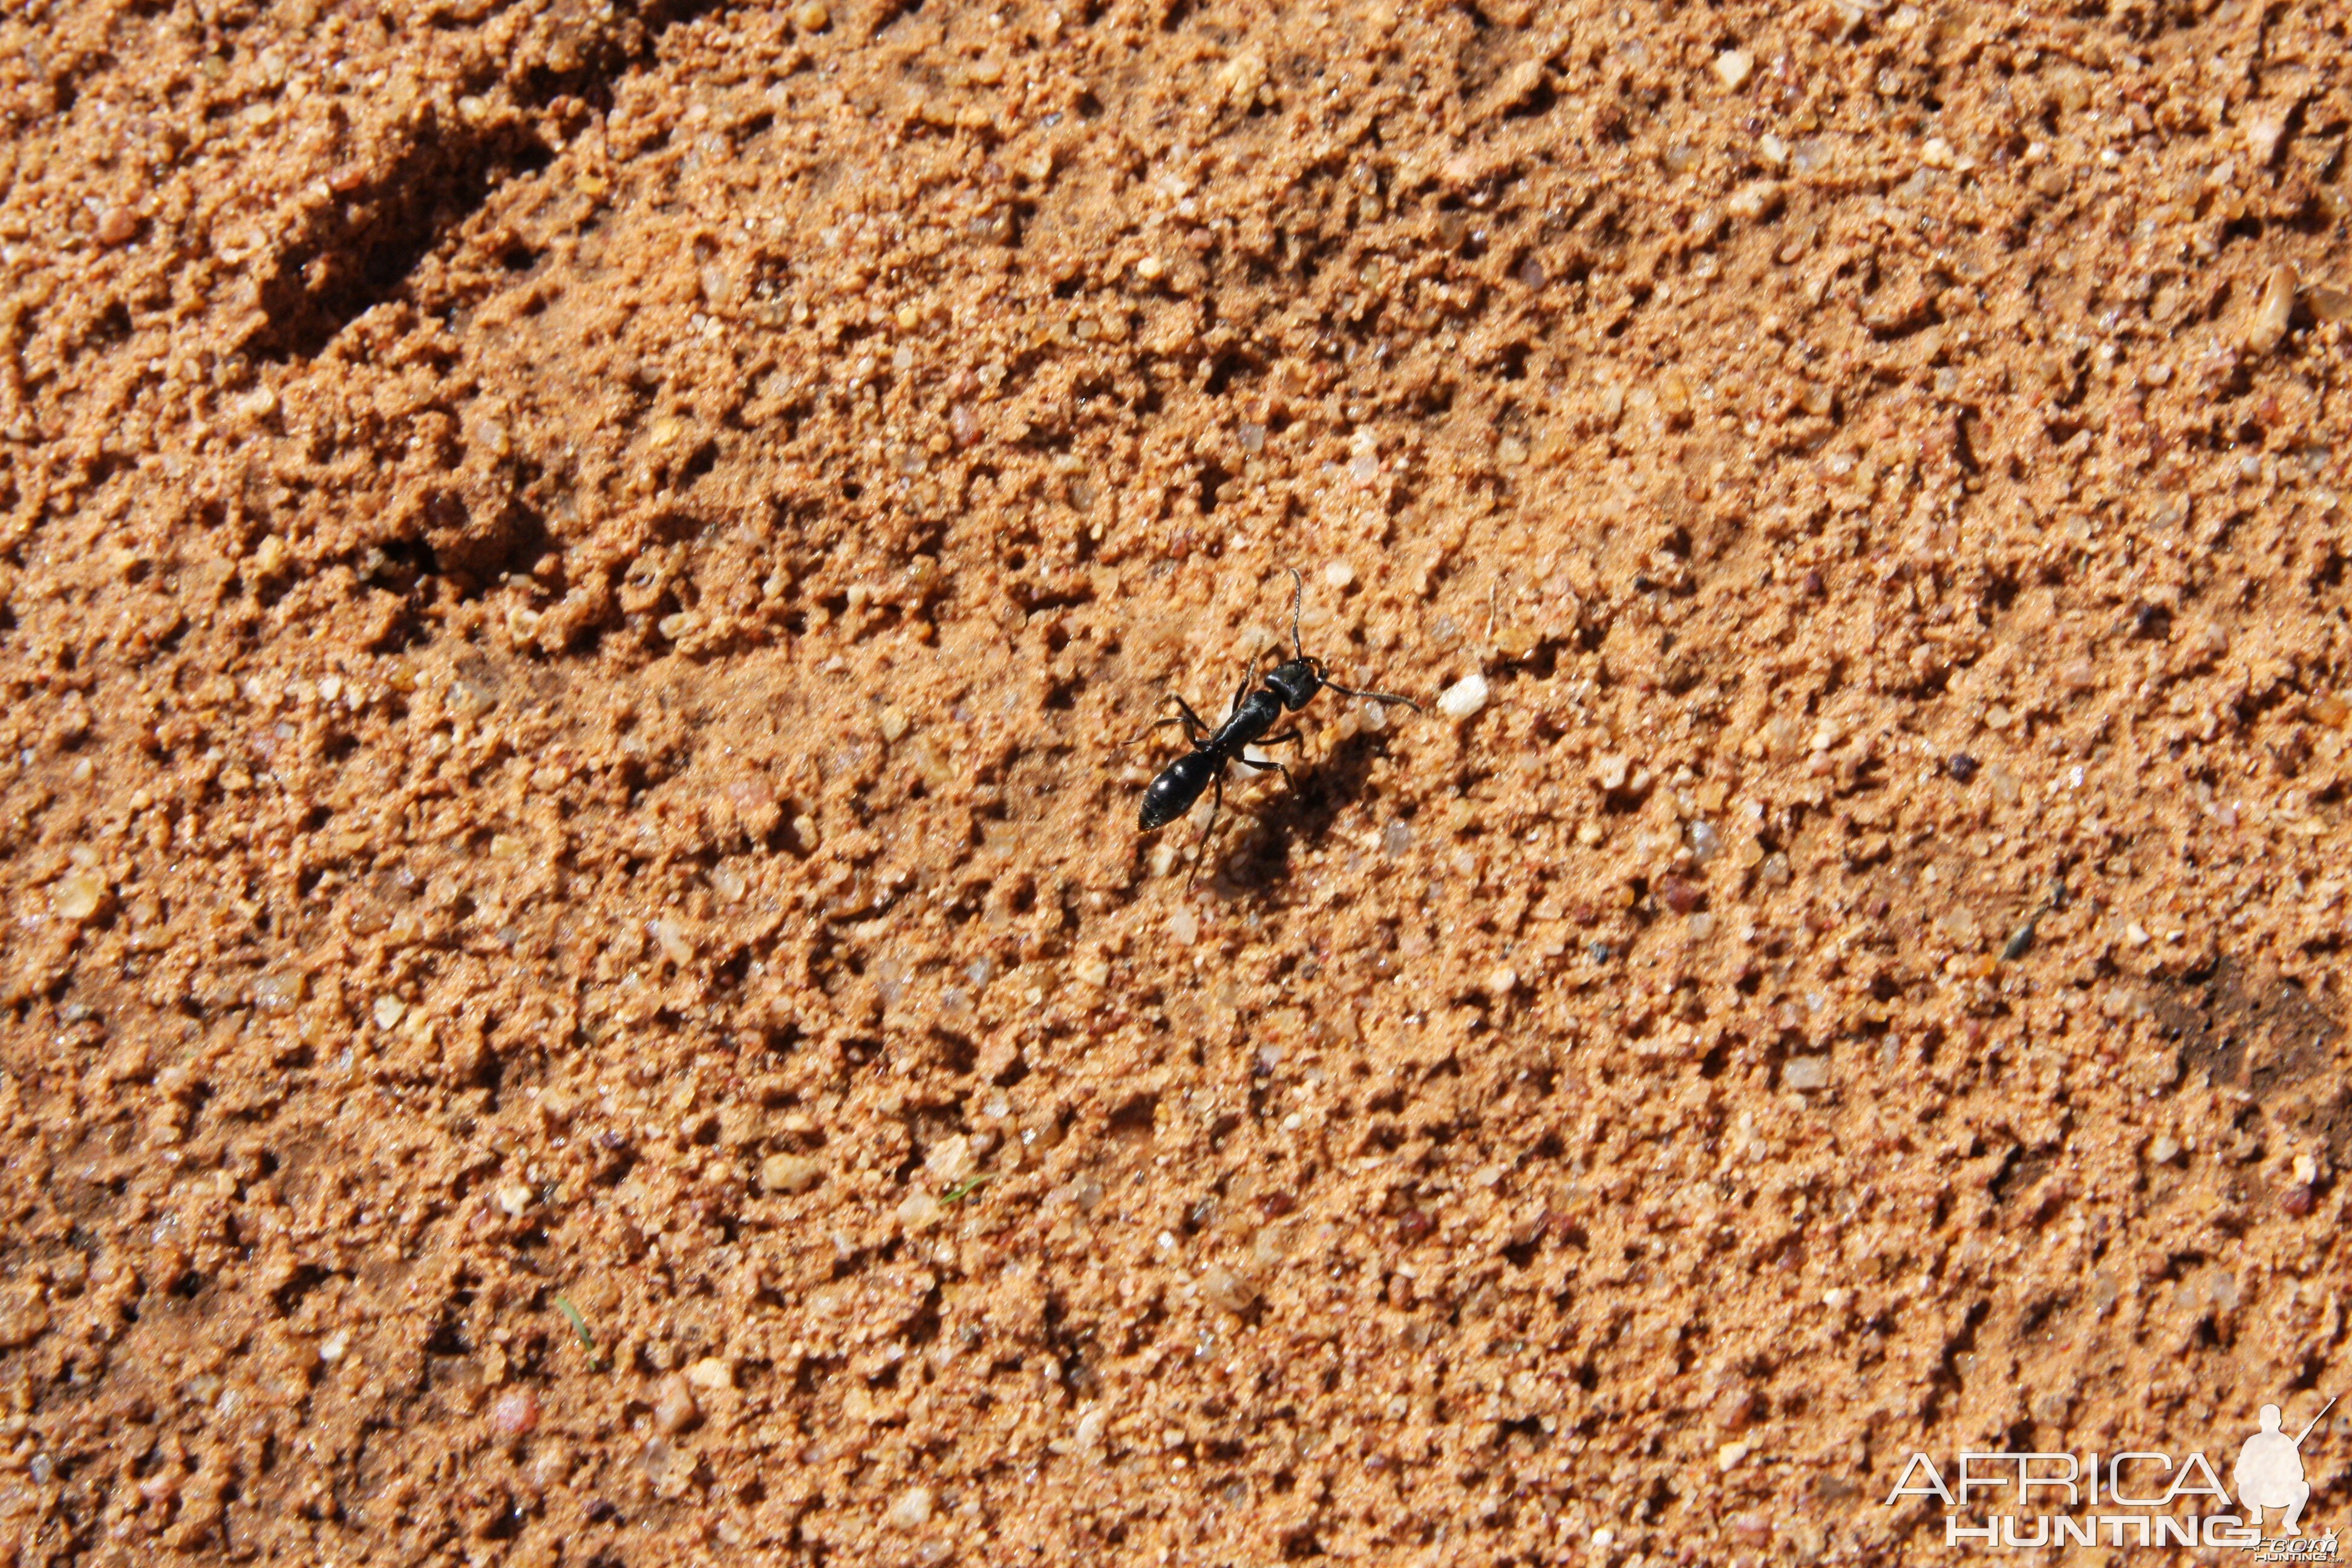 Ant Namibia